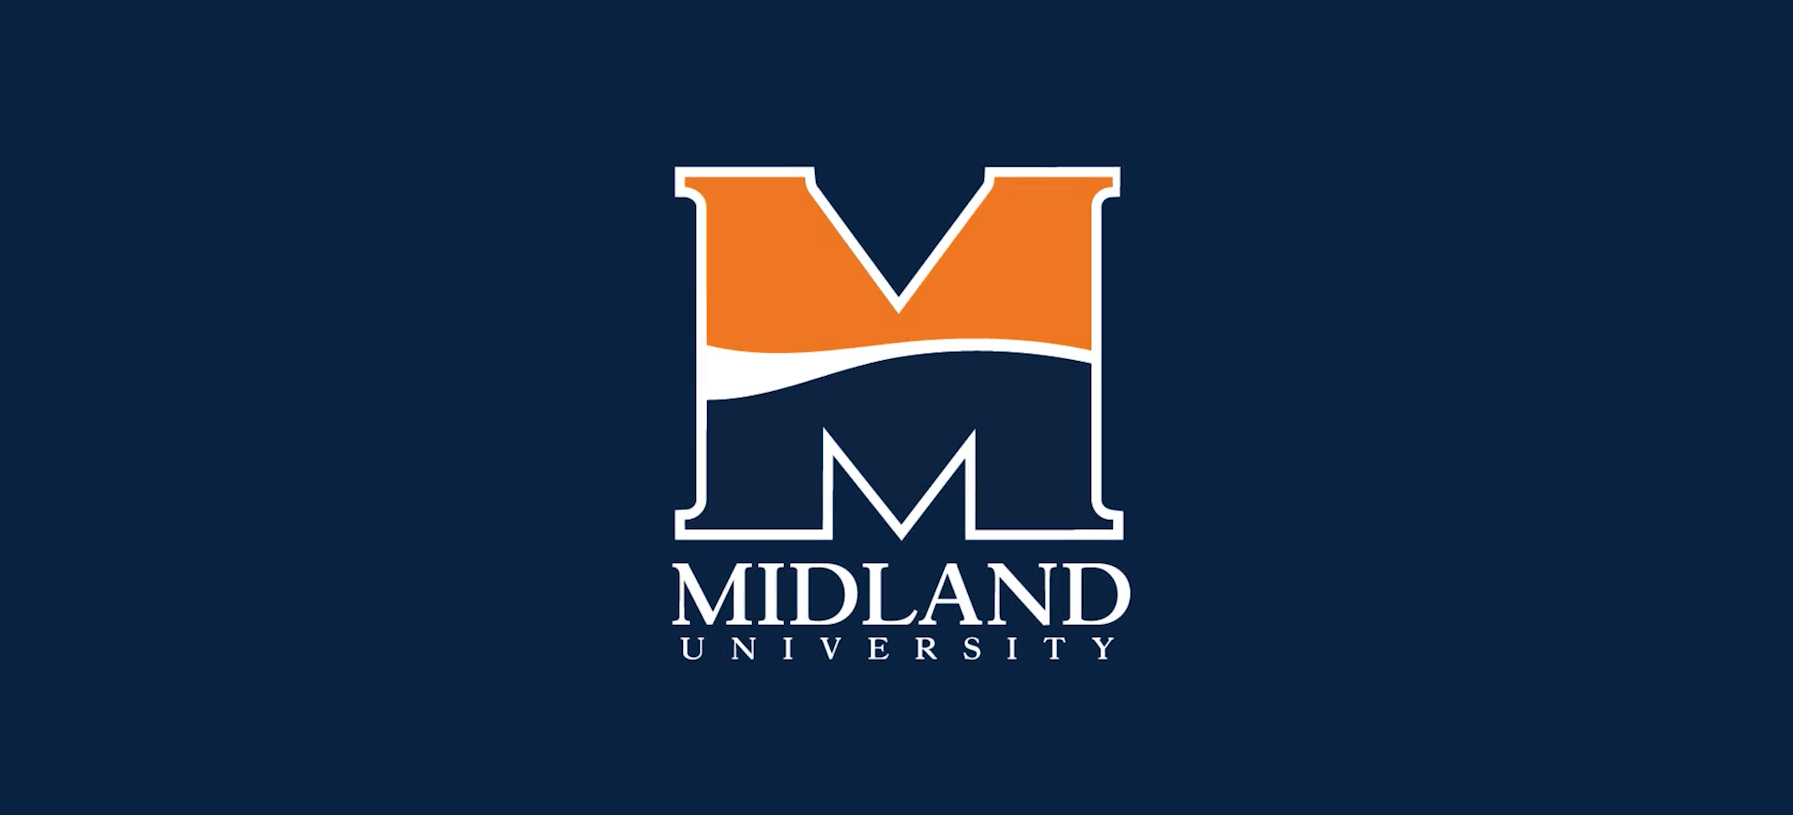 Midland logo navy background